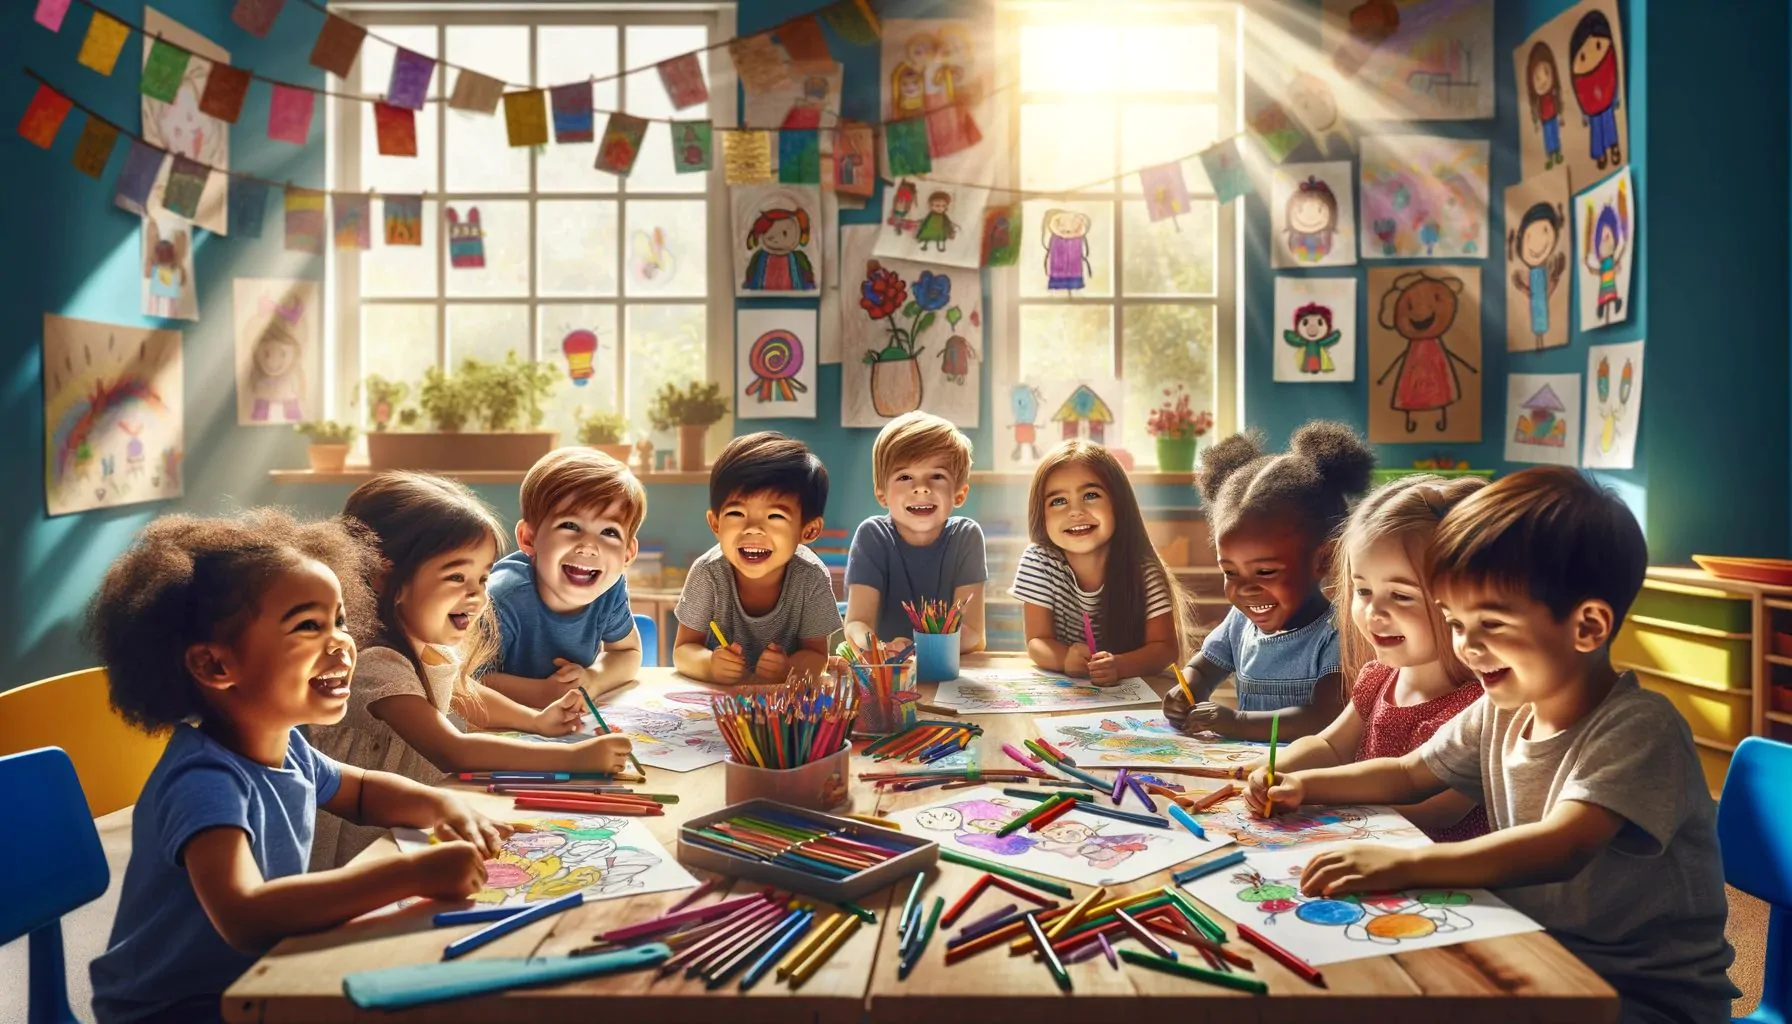 Τα οφέλη των σελίδων χρωματισμού για παιδιά - ένας κόσμος μαγείας για όλες τις ηλικίες